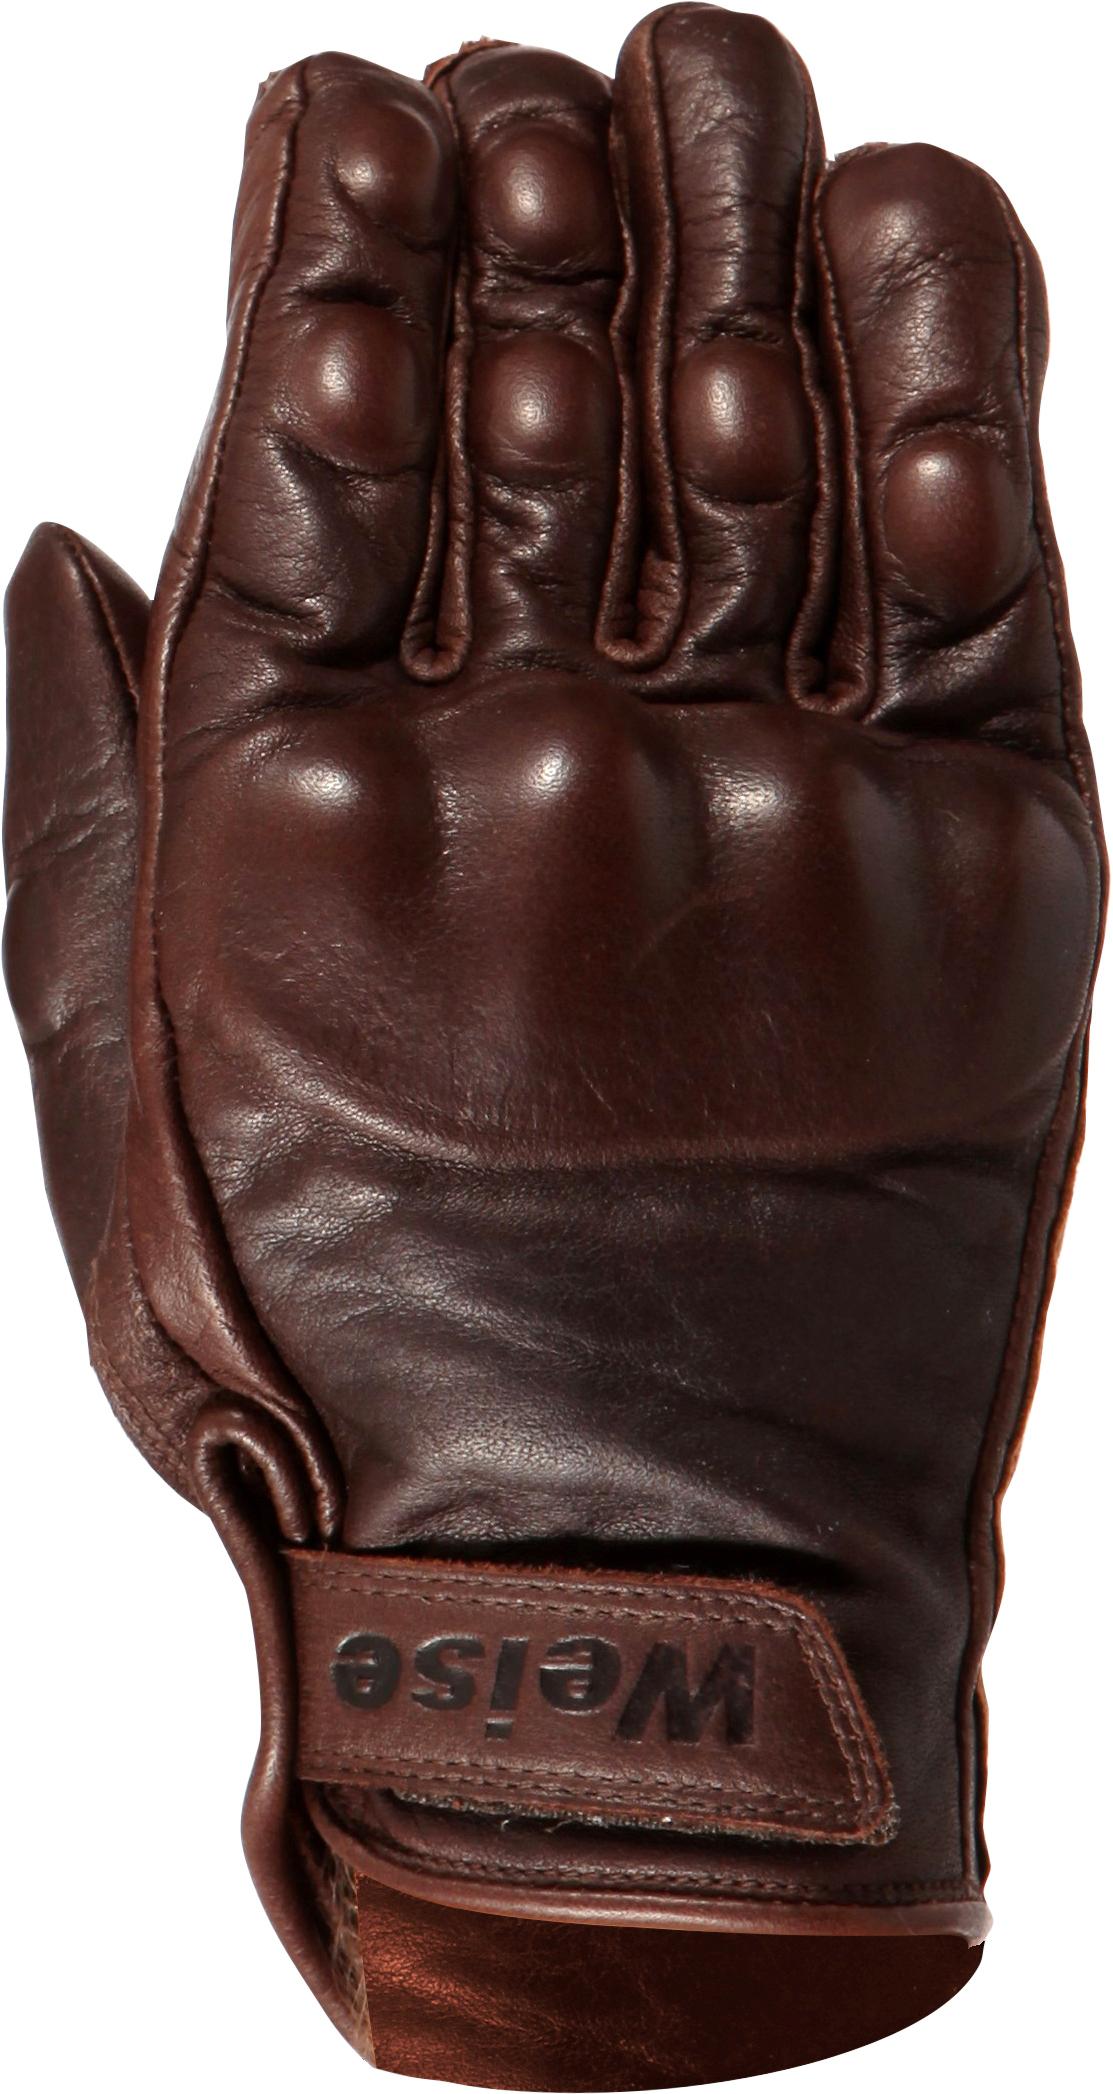 Weise Victory Gloves Brown Medium